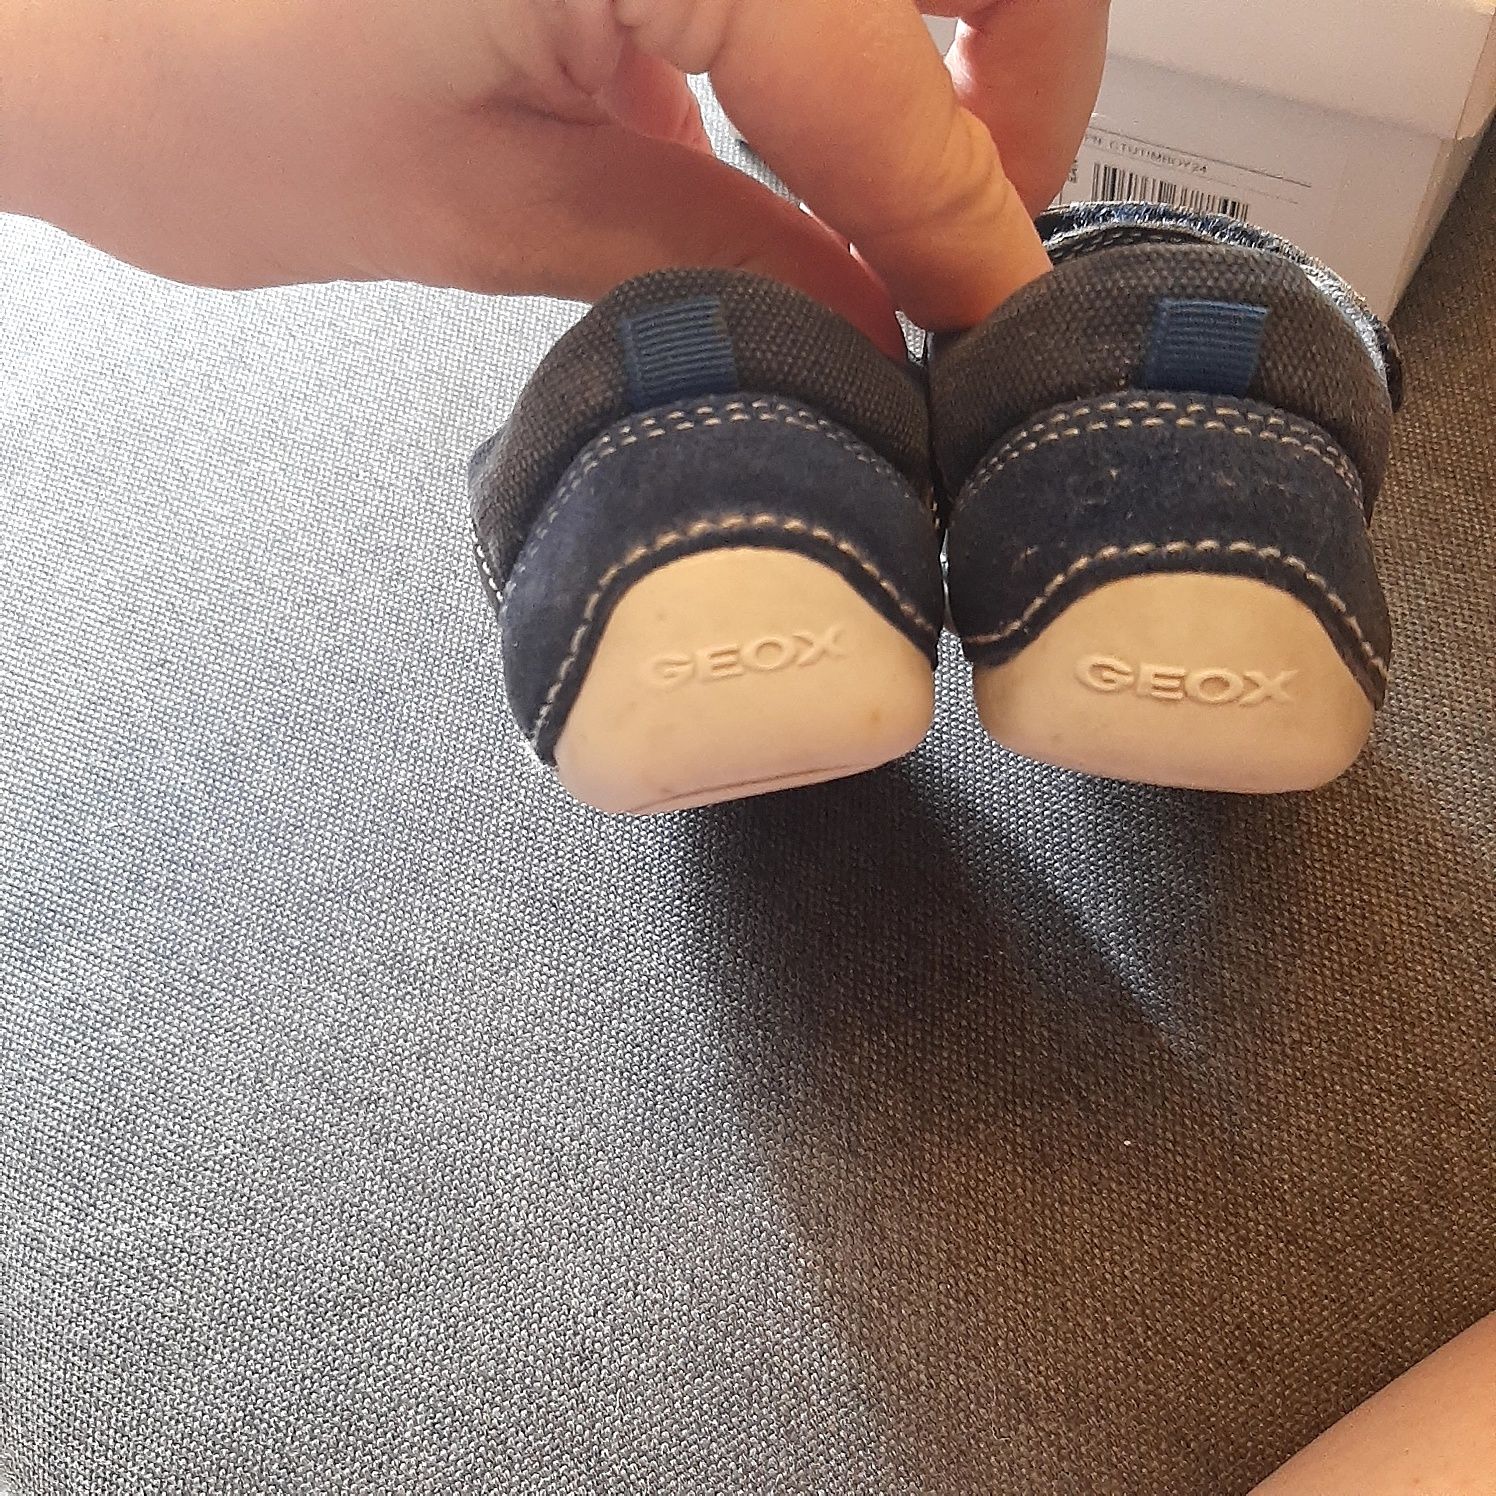 Buty dla chlopca firmy Geox do nauki chodzenia , rozmiar 20